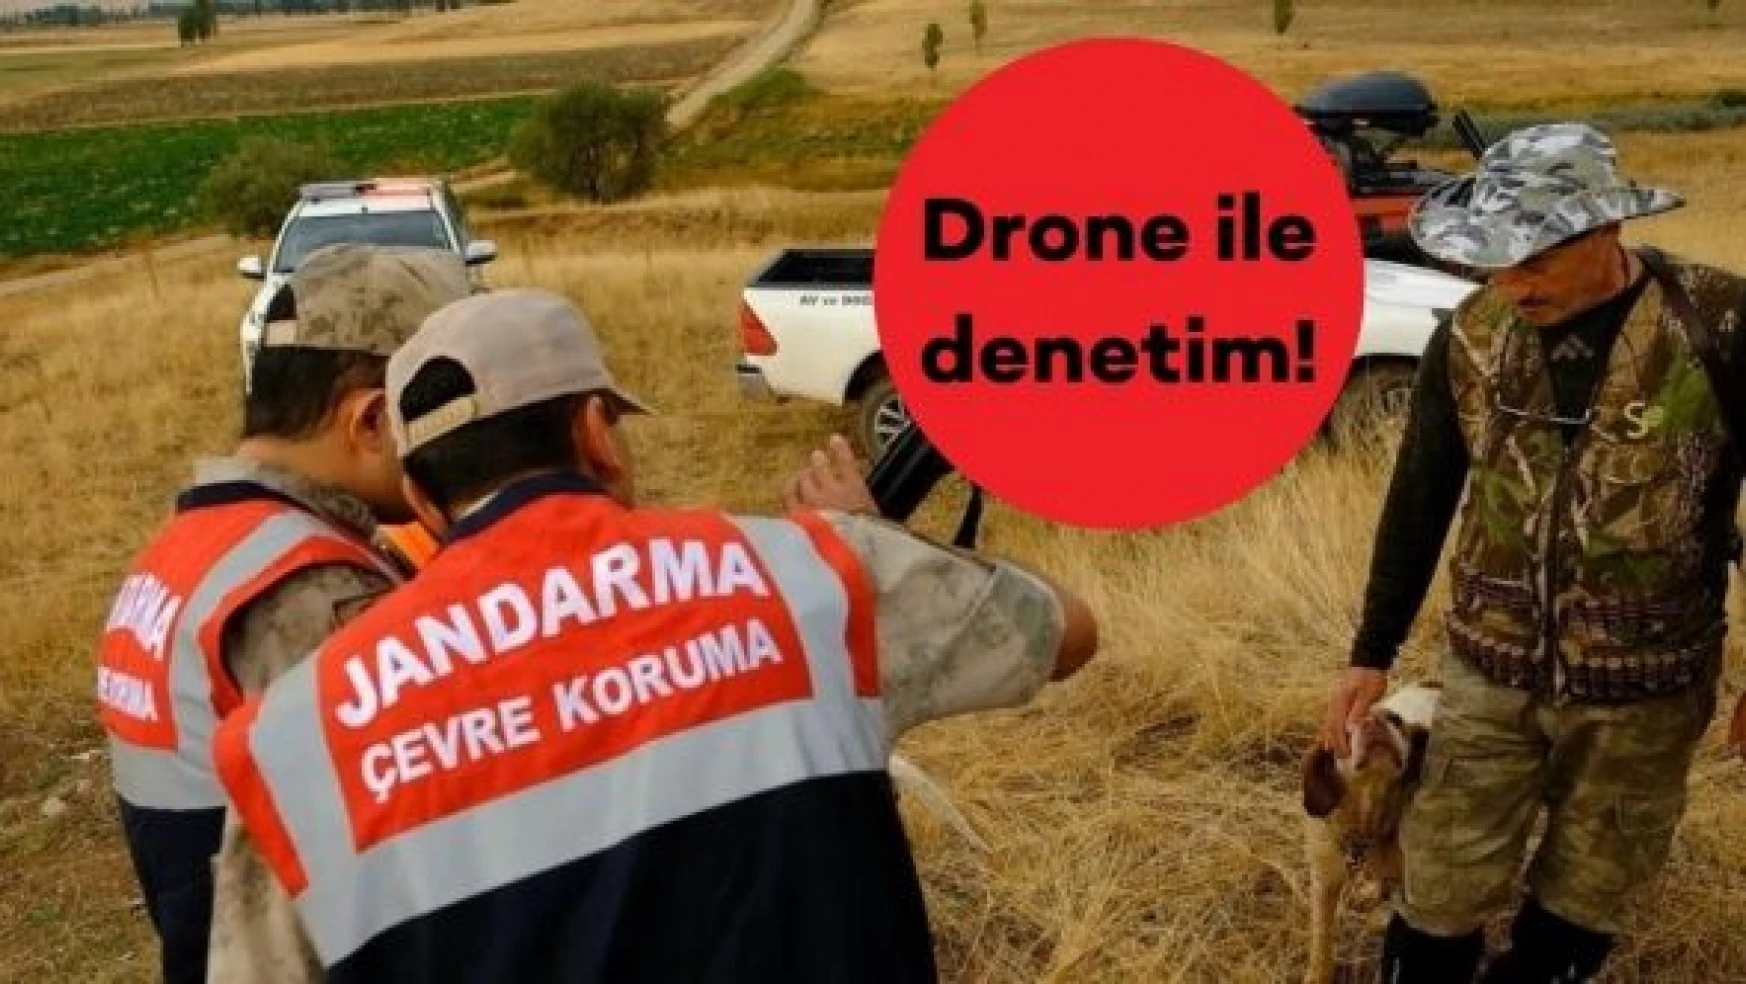 Bayburt'ta drone destekli kaçak avcılık denetimi!